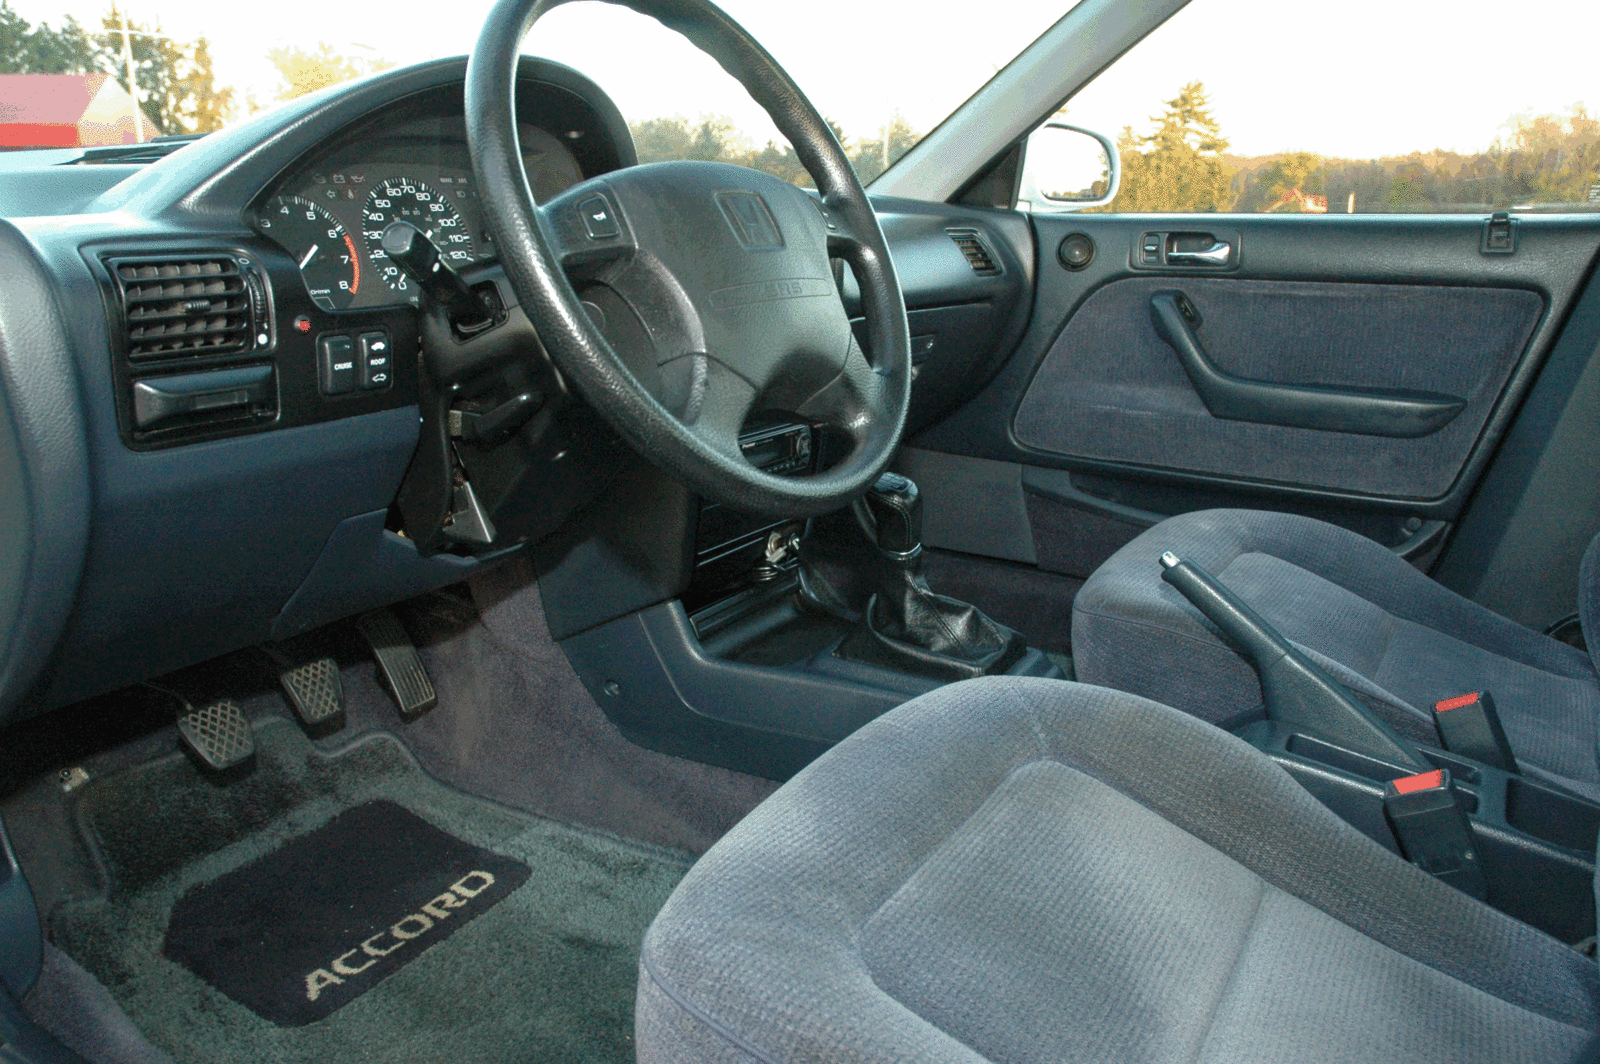 1992 Honda accord interior pictures #5